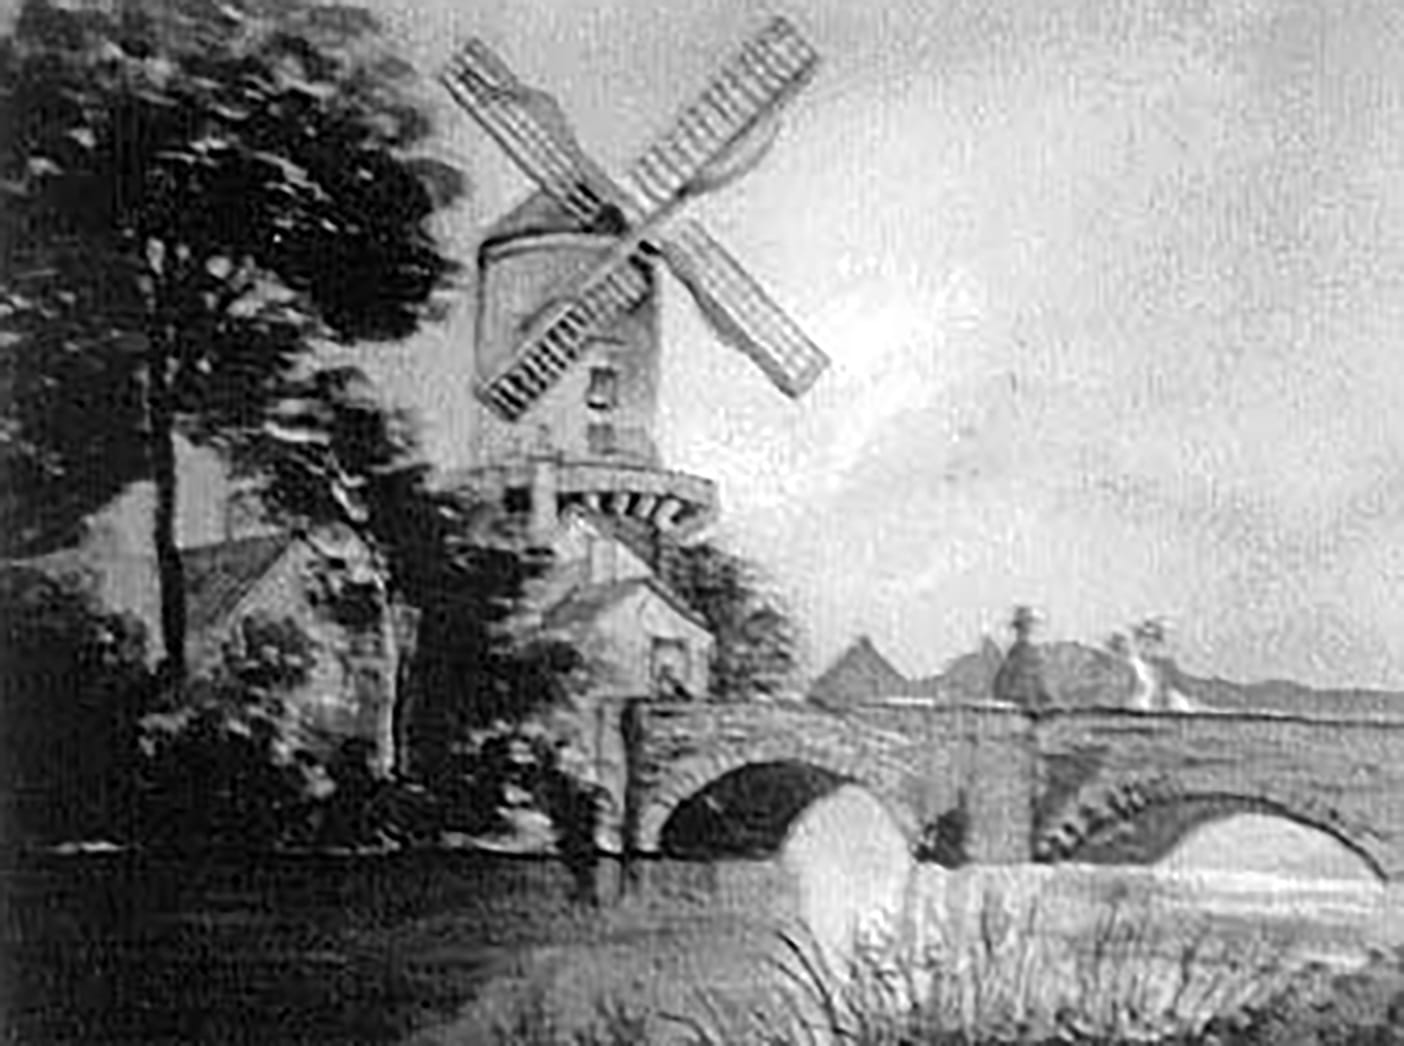 Broad Eye Windmill, Stafford: The Midlands Tallest Windmill